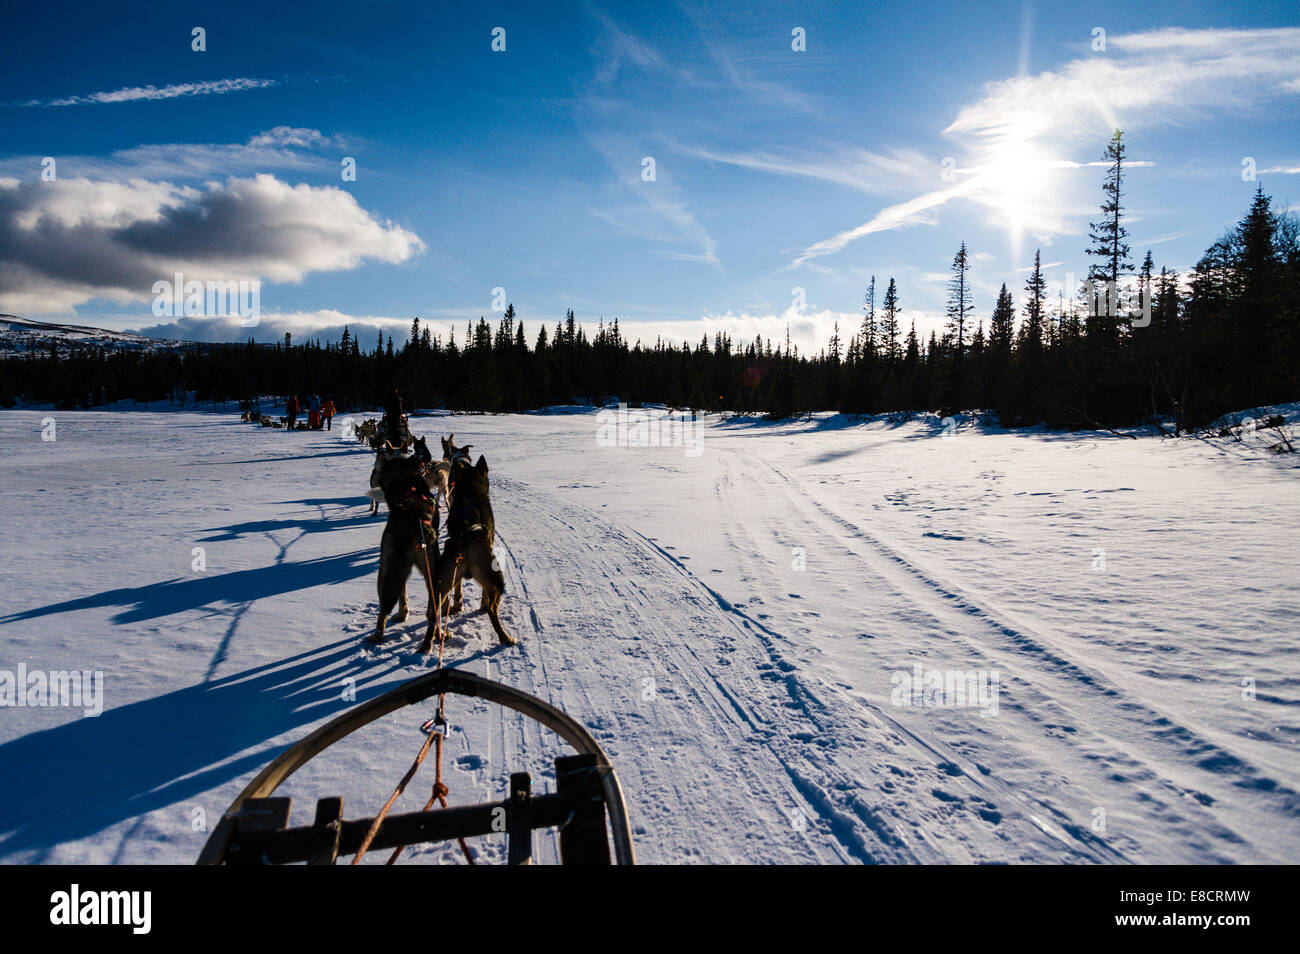 Sweden, Åre. Sled dog racing near Ottsjö. Stock Photo